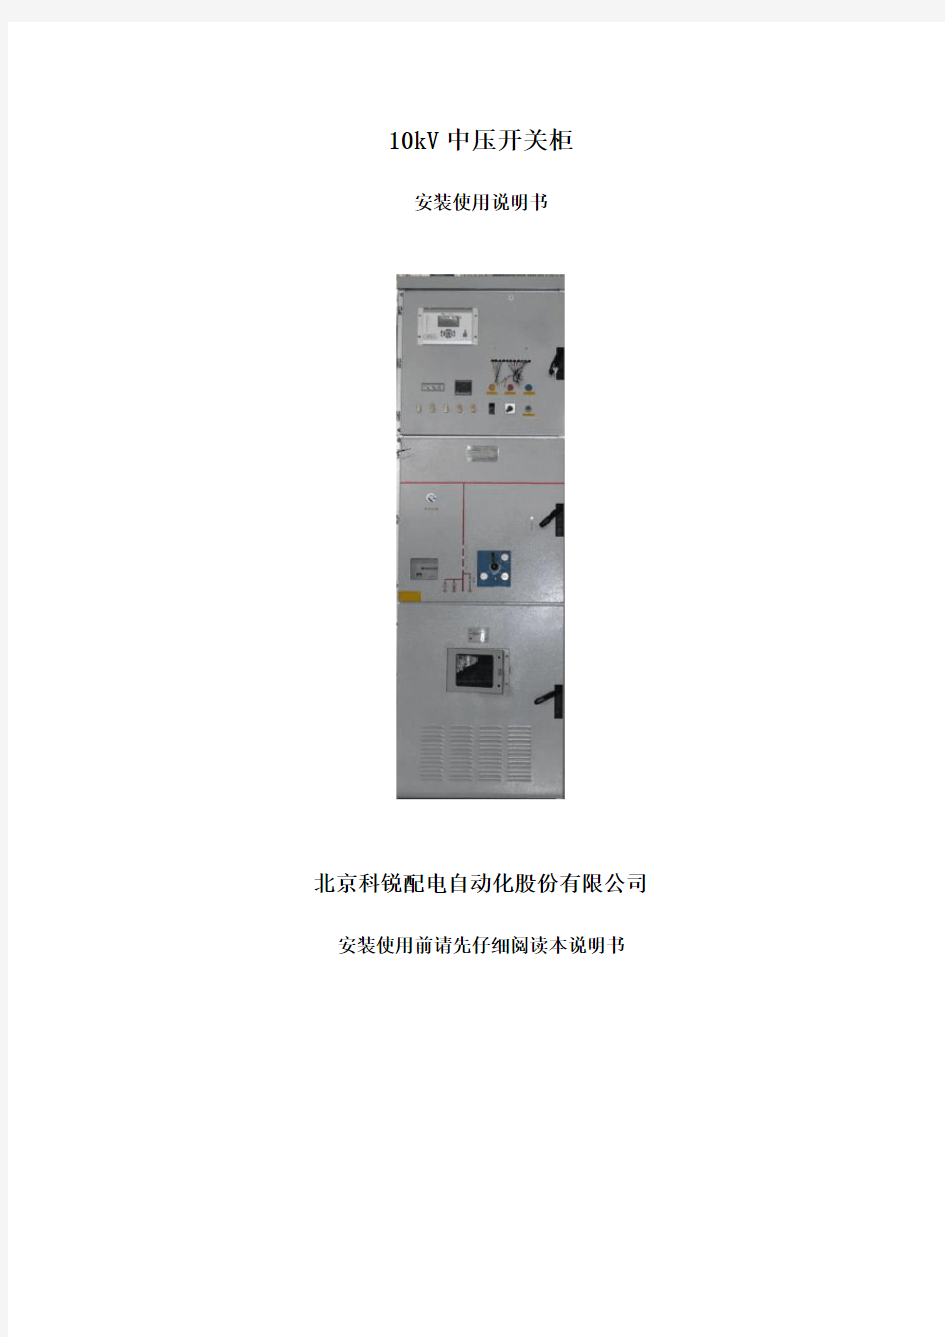 北京科锐配电自动化股份有限公司中压开关柜说明书